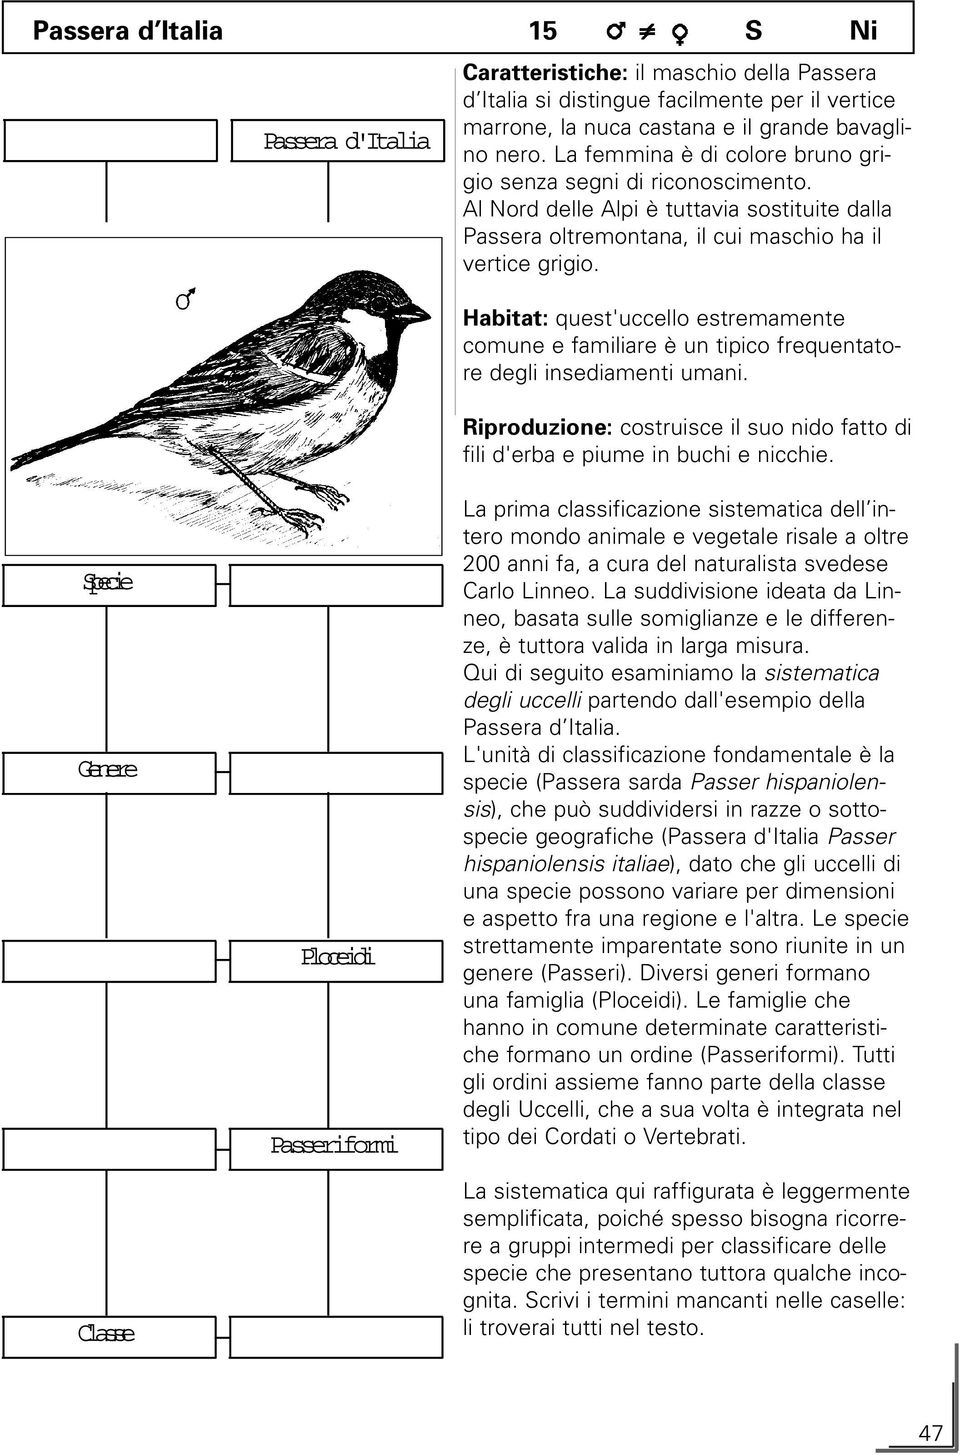 Habitat: quest'uccello estremamente comune e familiare è un tipico frequentatore degli insediamenti umani. Riproduzione: costruisce il suo nido fatto di fili d'erba e piume in buchi e nicchie.